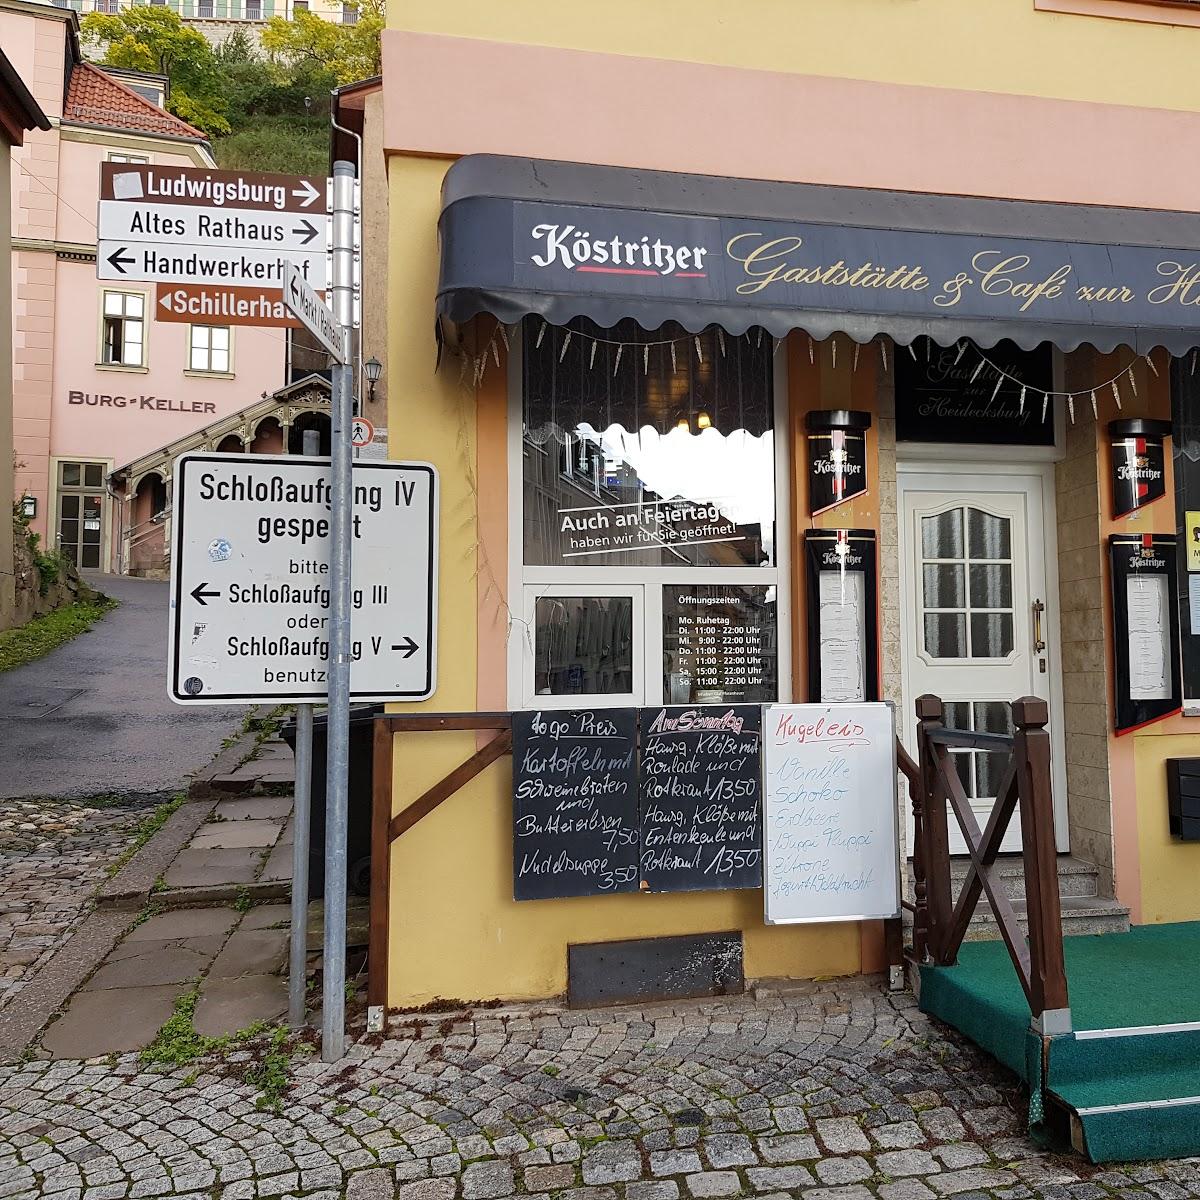 Restaurant "Gaststätte zur Heidecksburg" in Rudolstadt